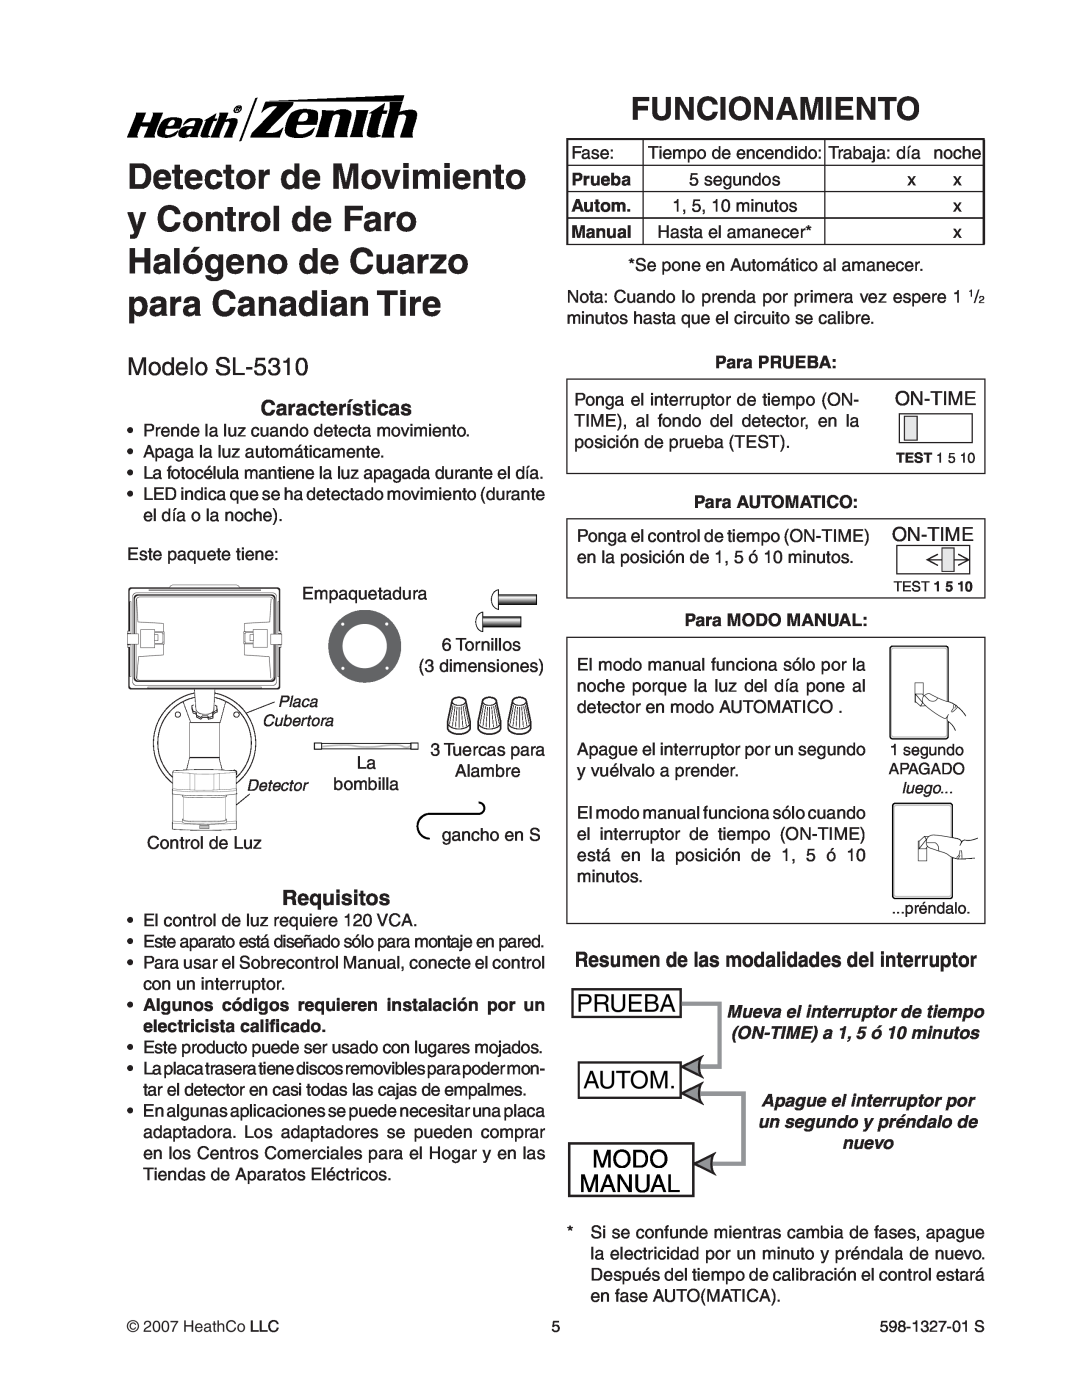 Heath Zenith Funcionamiento, Modelo SL-5310, Características, Requisitos, Resumen de las modalidades del interruptor 